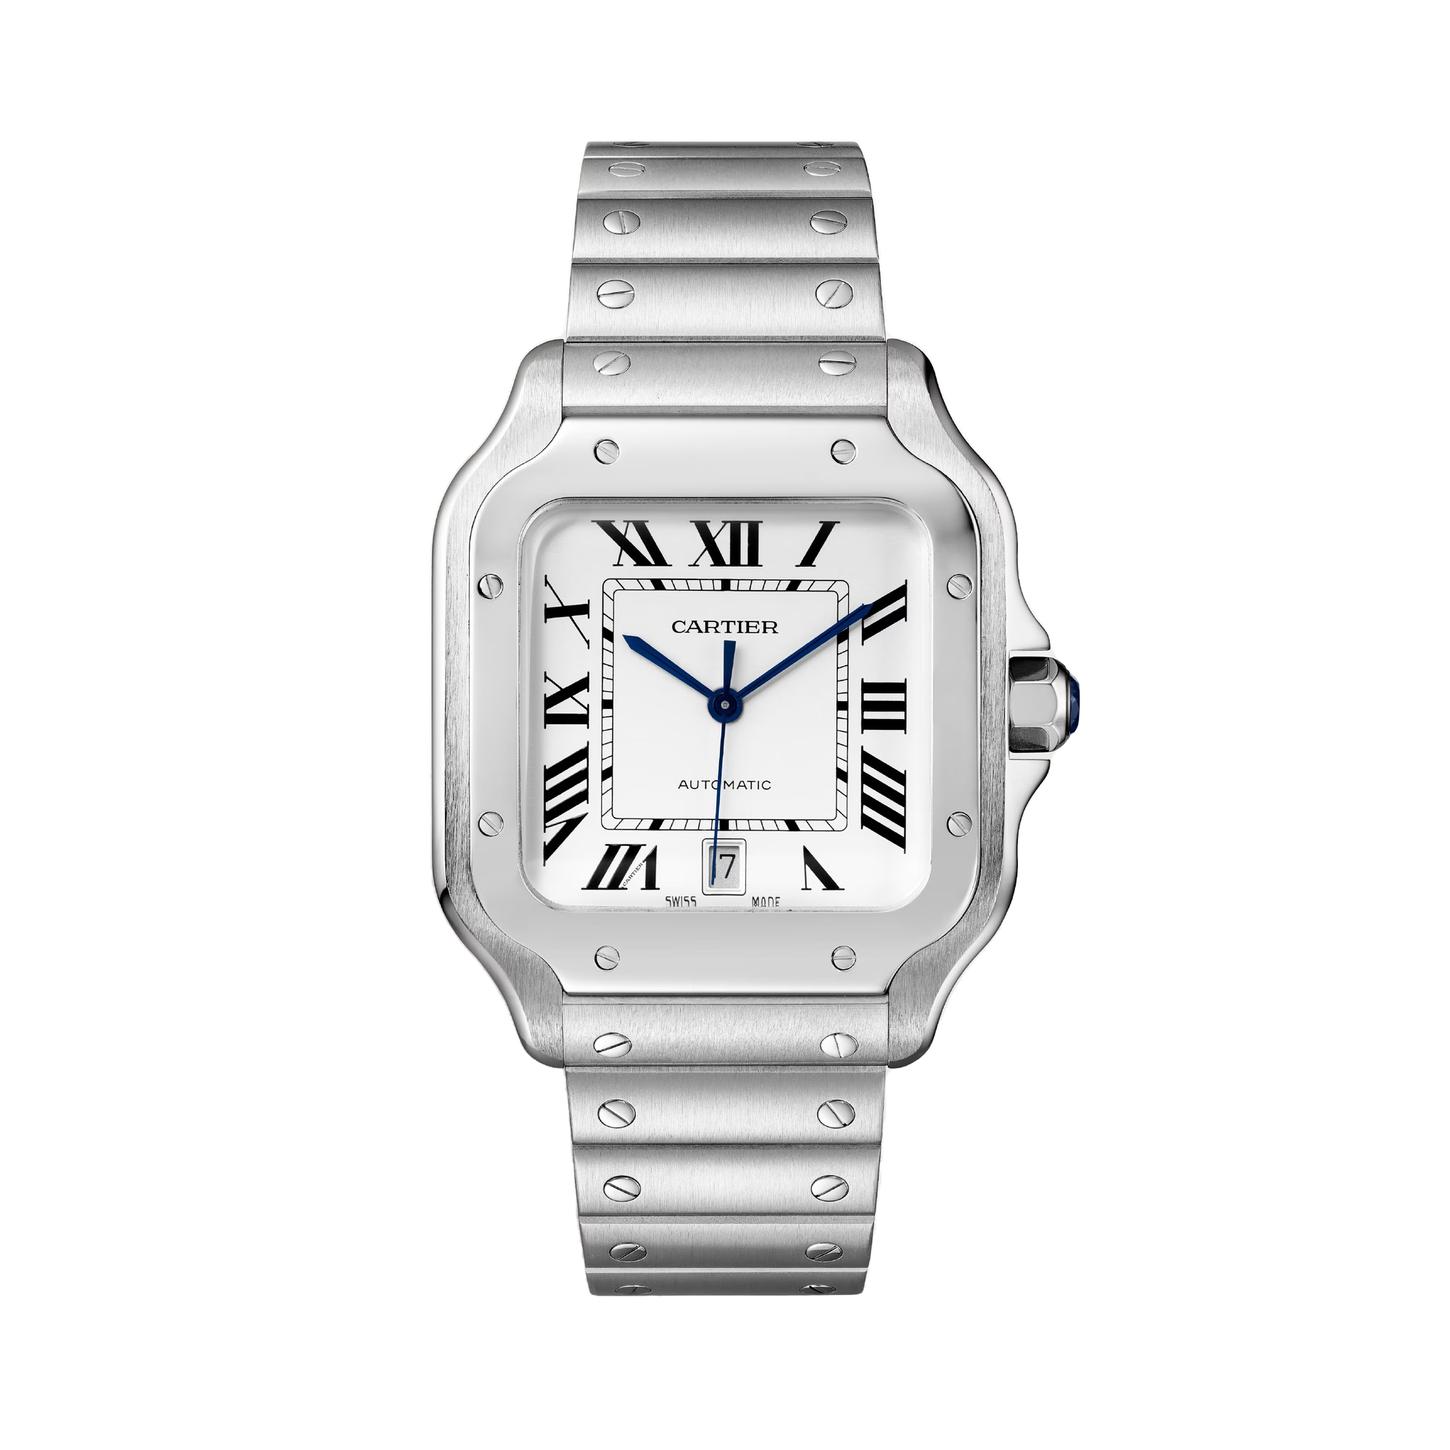 Santos de Cartier Watch, size large 0